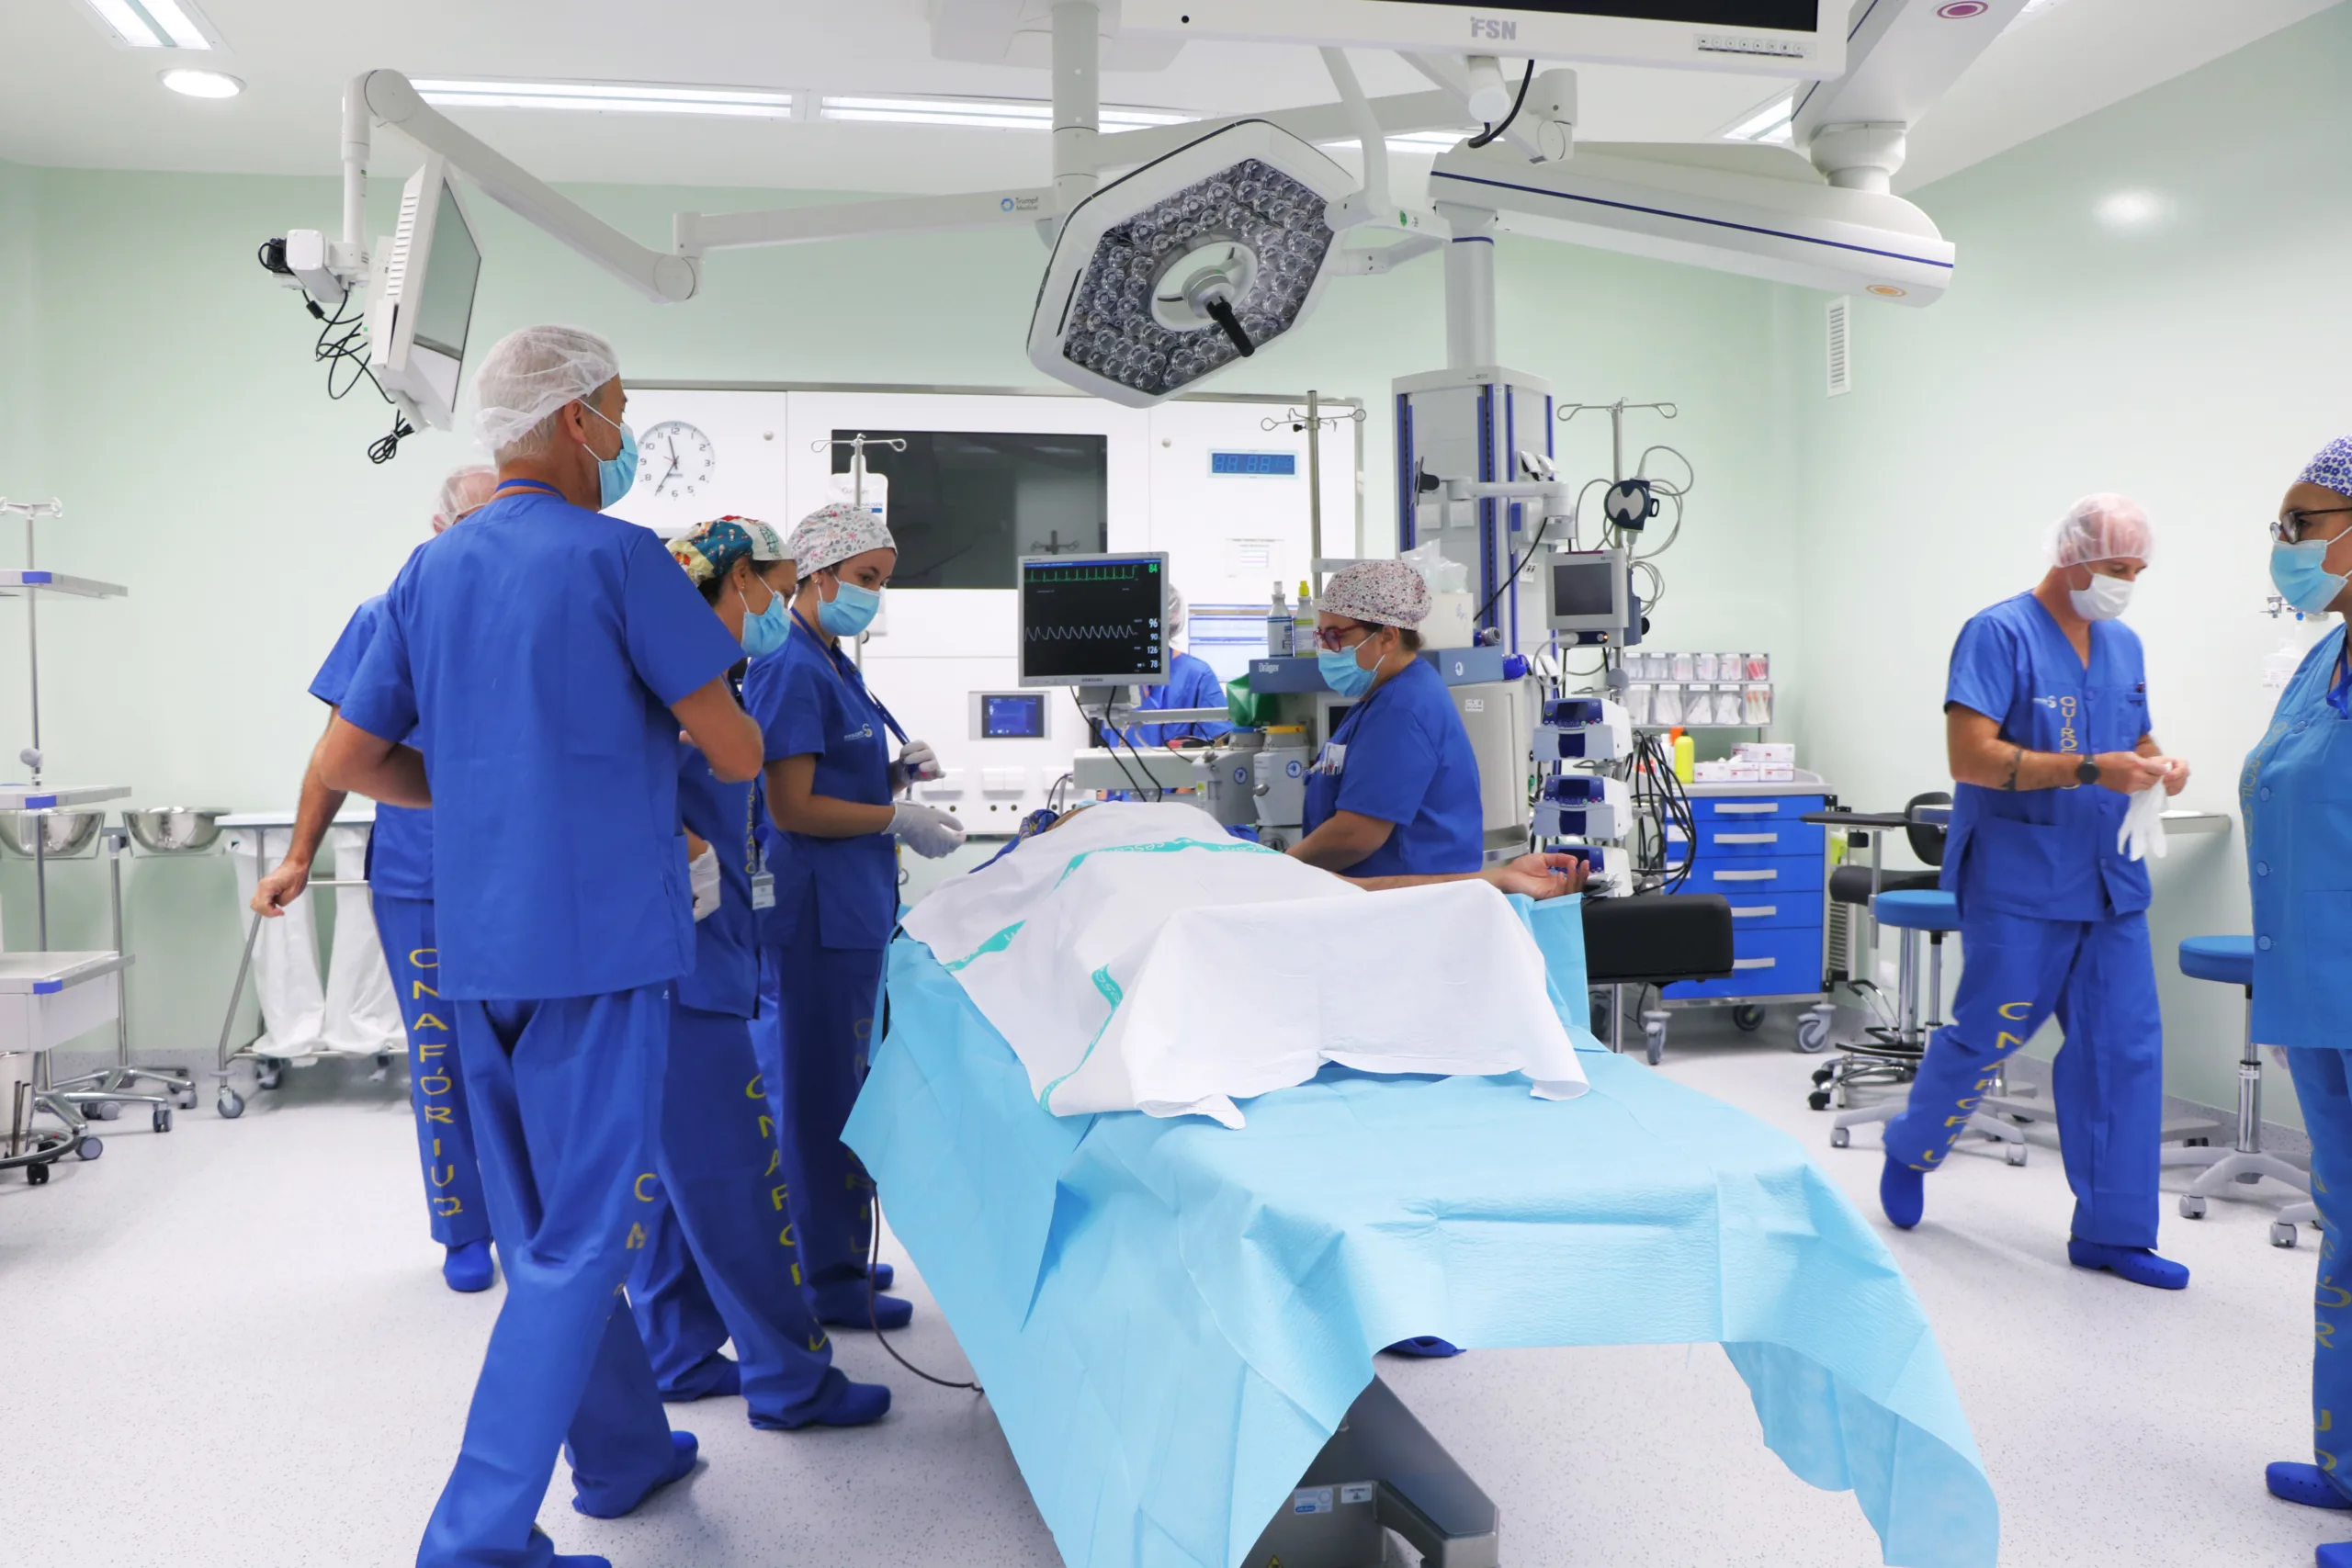 SCS presenta una oferta «razonable» para médicos y confía en acuerdo para retomar actividad quirúrgica de tarde